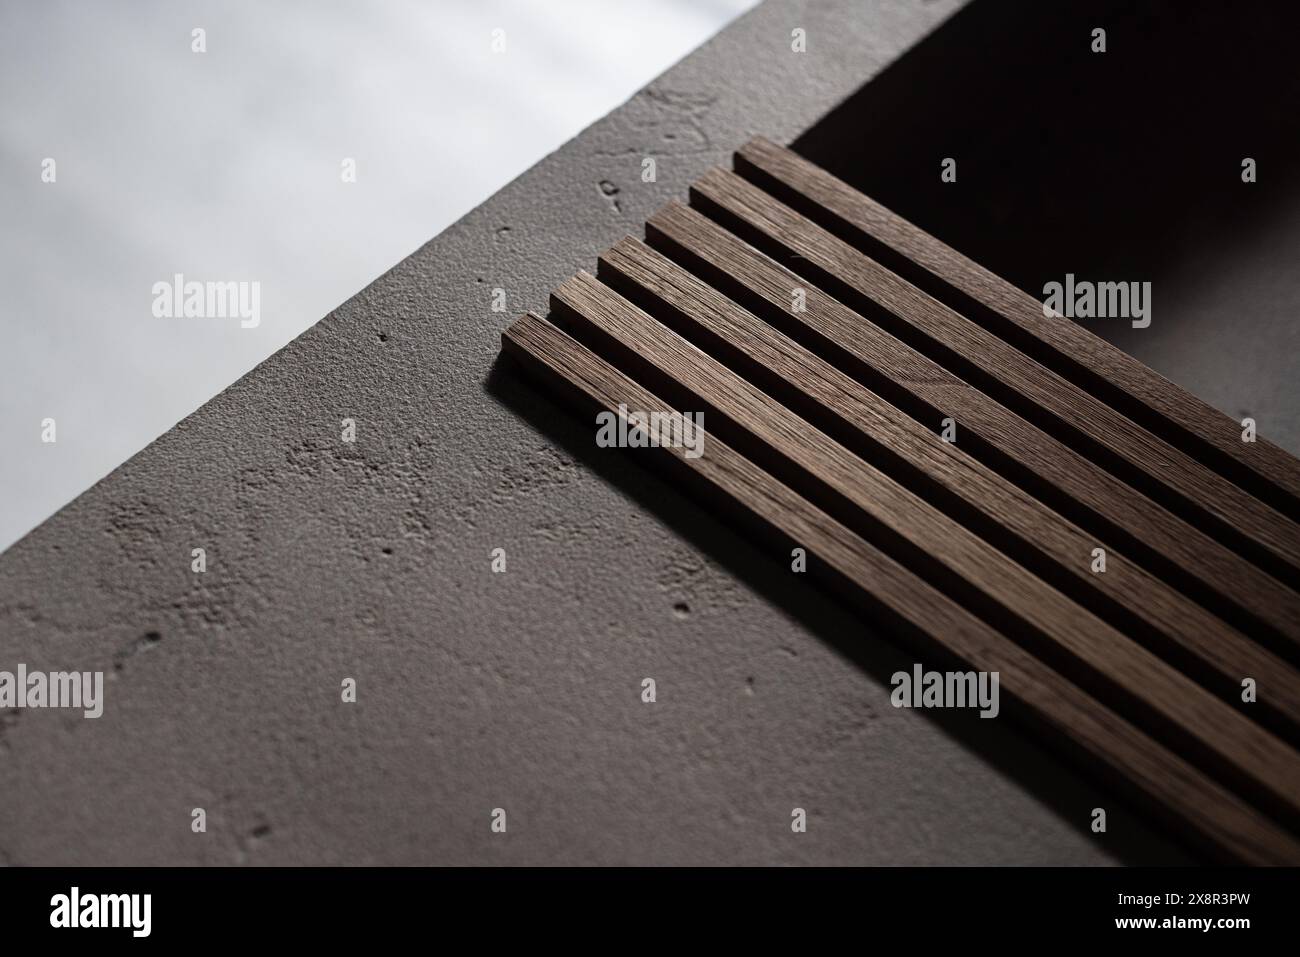 Spranghe in legno su una superficie in cemento con illuminazione soffusa Foto Stock